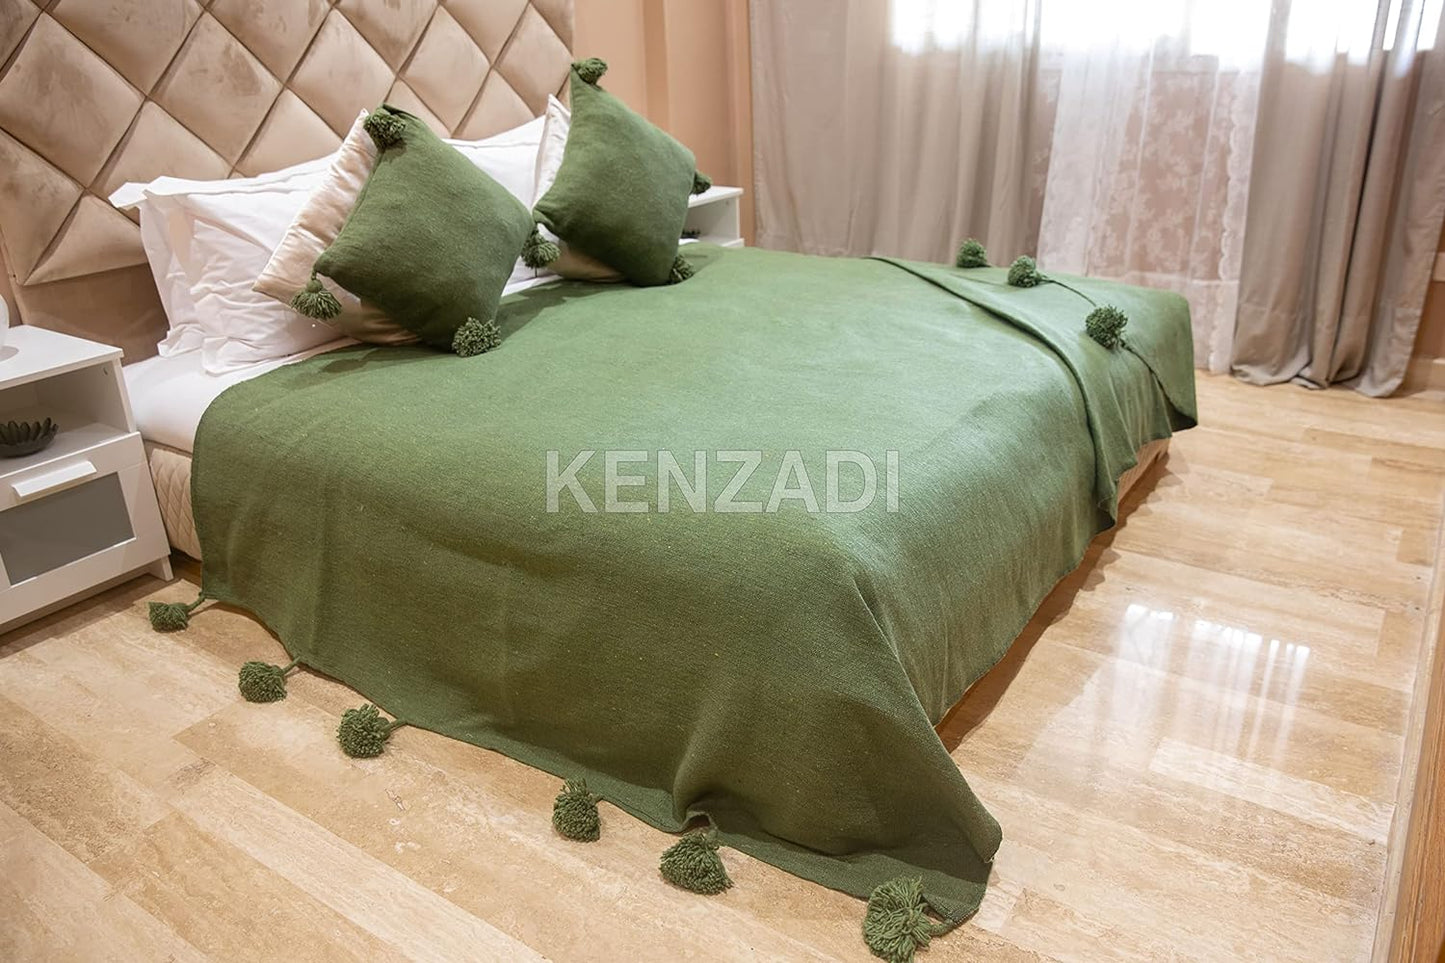 KENZADI Moroccan Handmade Pompom Blanket, Throw Blanket, Pom Pom Blanket, Boho Blanket, Bed Cover, Warm Blanket, Cozy Blanket (Green with pom Green, King (U.S. Standard)) - Handmade by My Poufs